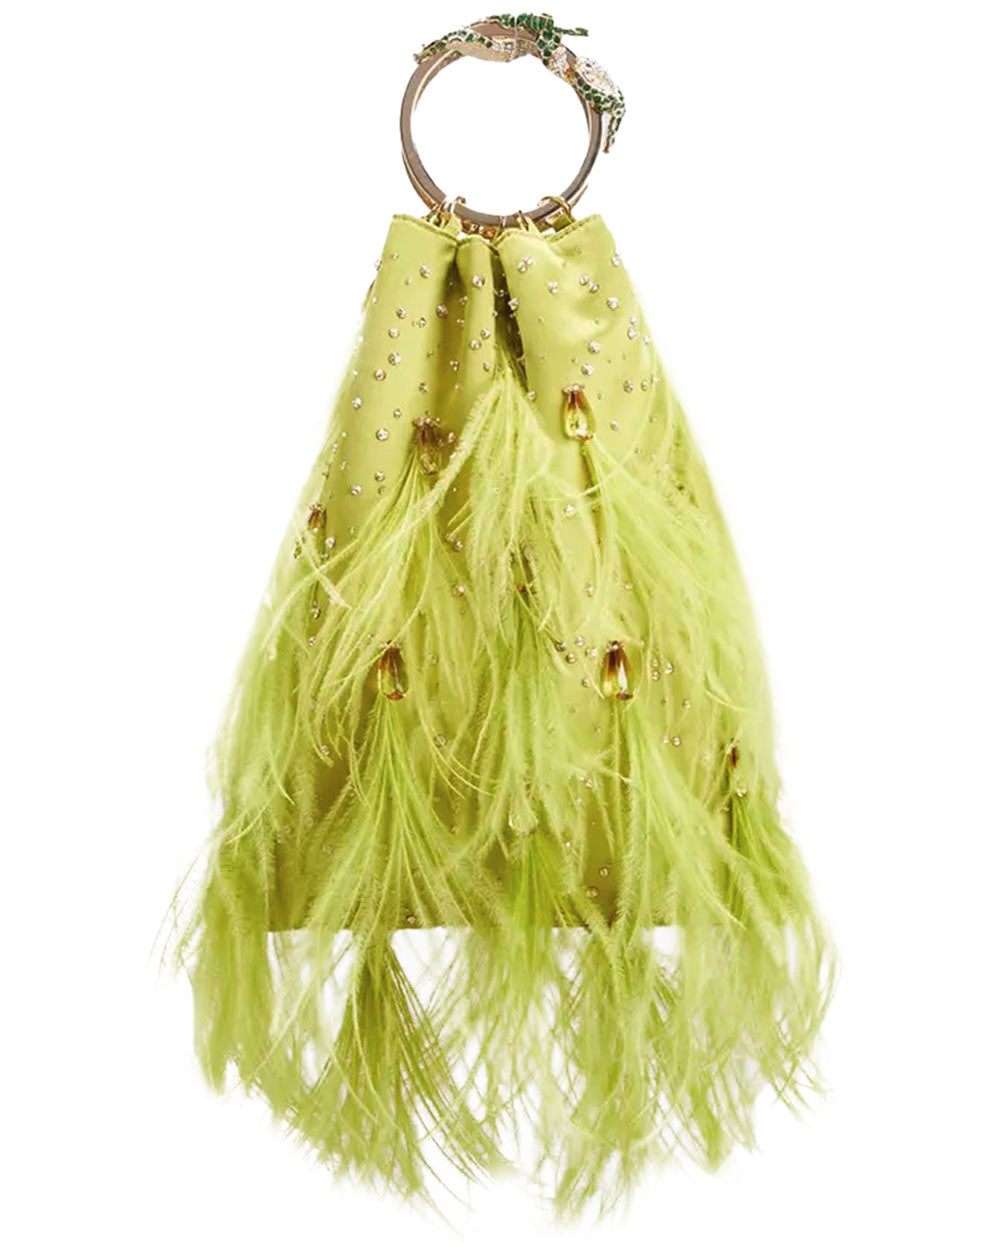 Valentino Feather Embellished Clutch Bag in Verde – Stanley Korshak